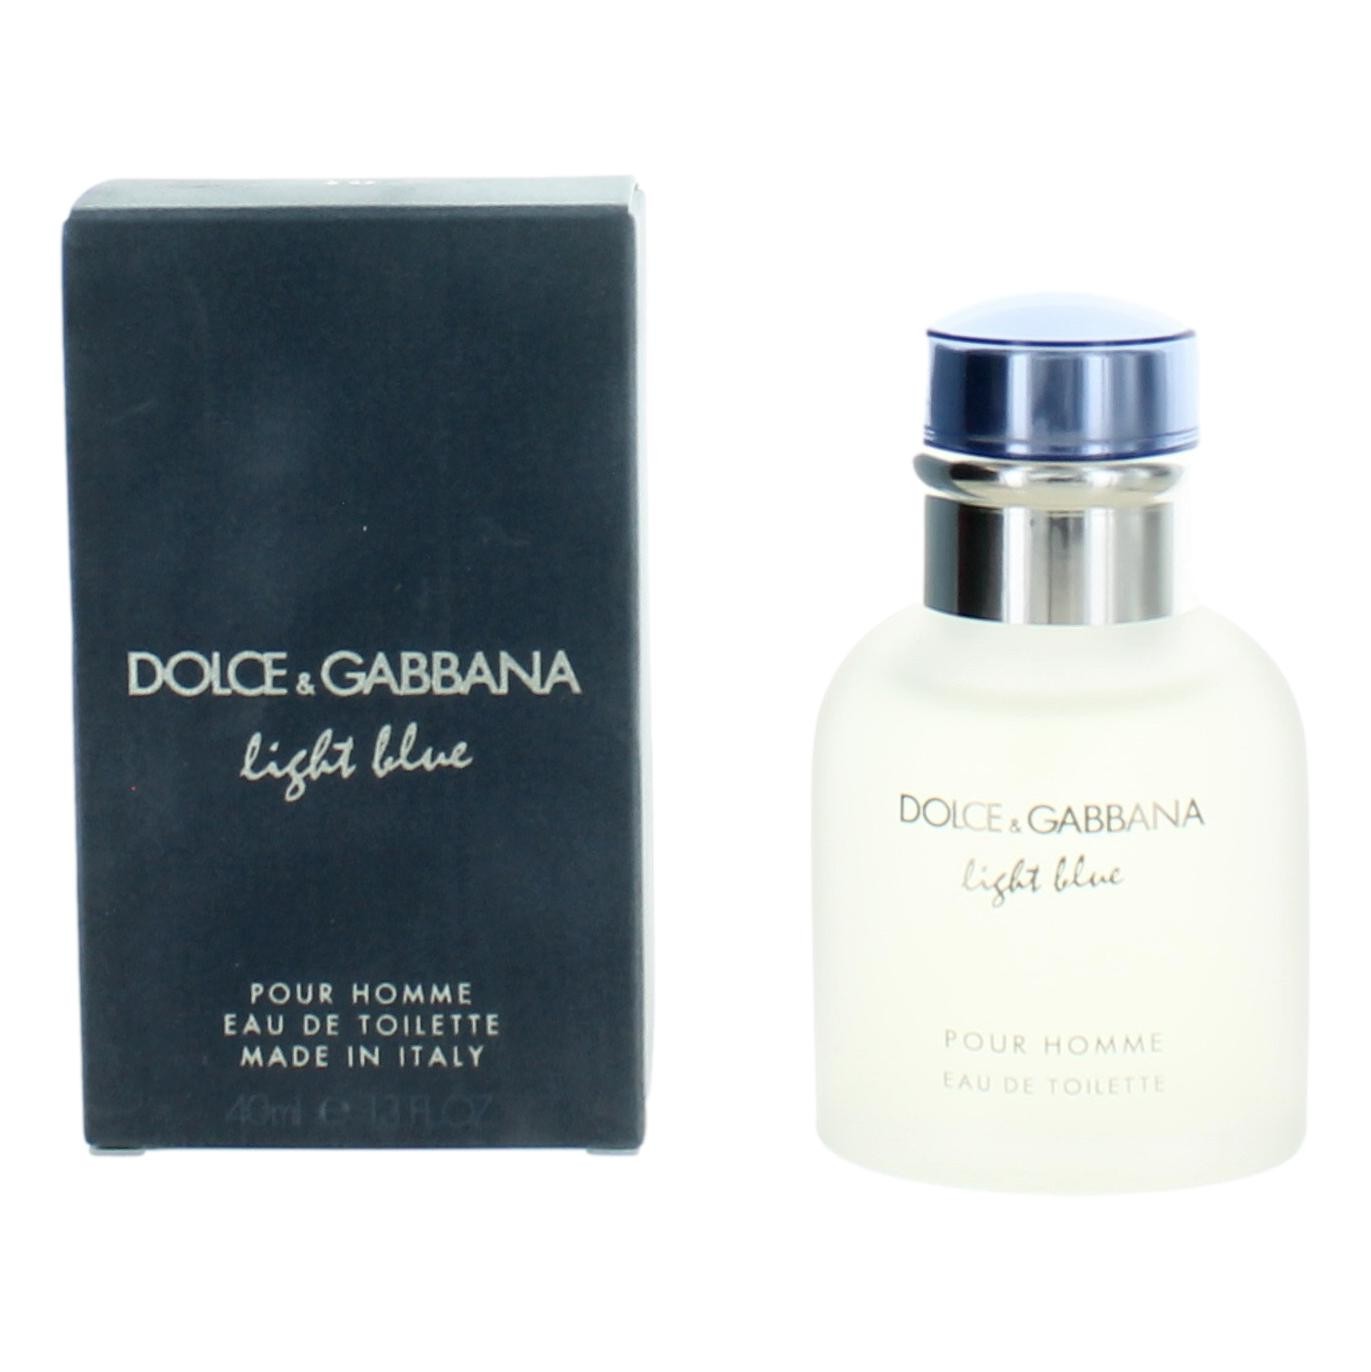 Light Blue by Dolce & Gabbana 1.3 oz Eau De Toilette Spray for Men